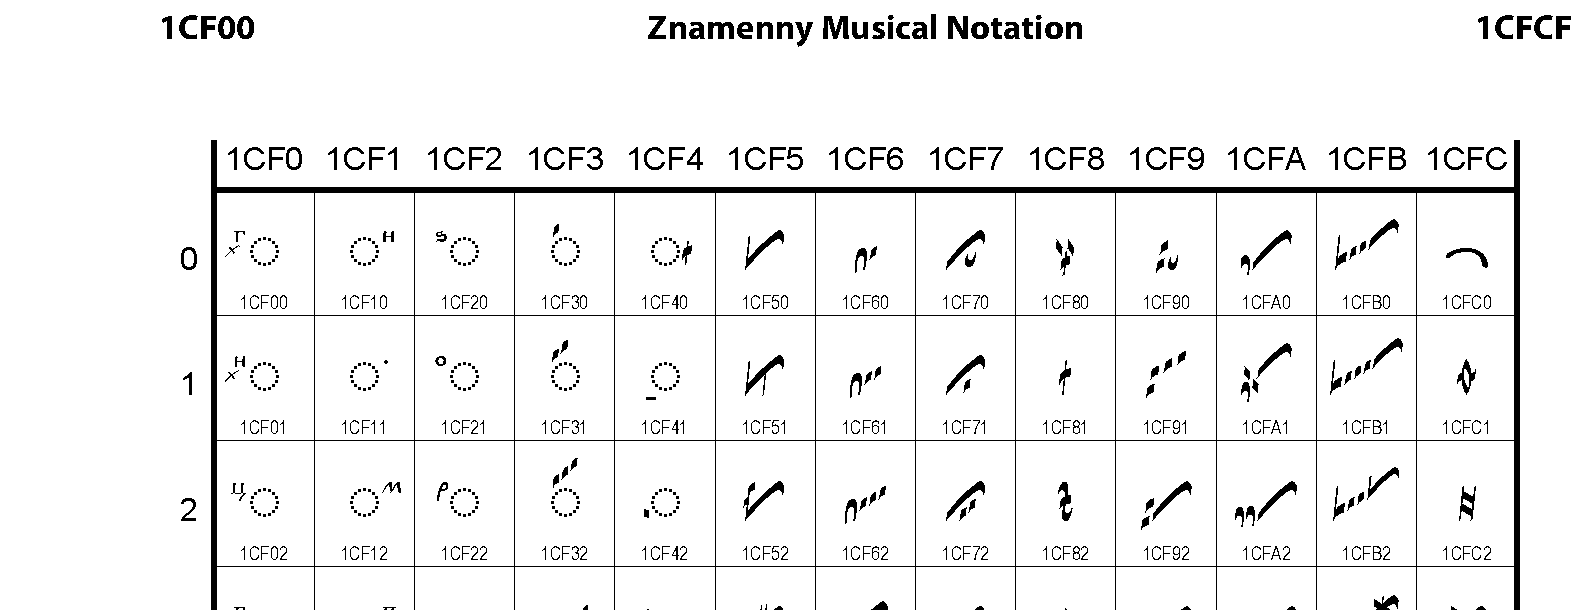 Unicode - Znamenny Musical Notation